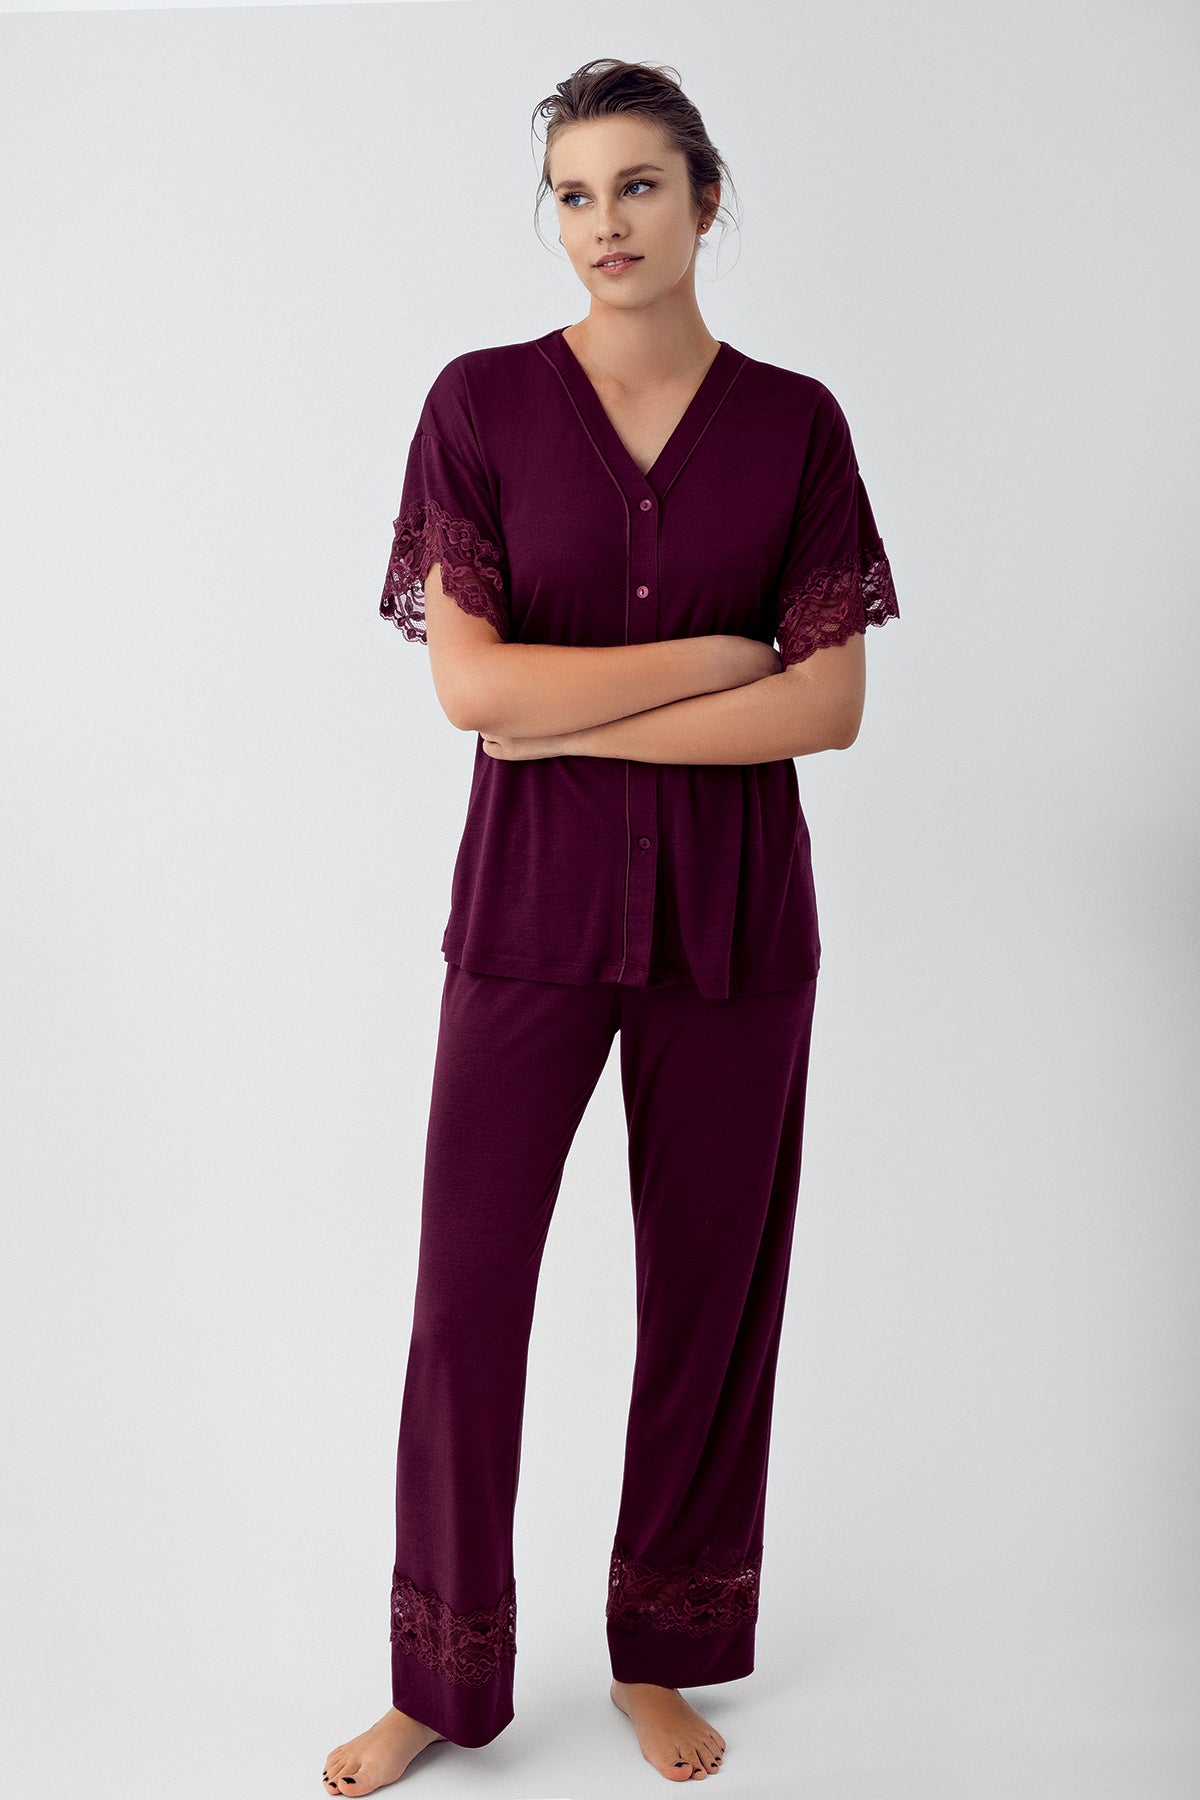 Shopymommy 16211 Lace Sleeve Maternity & Nursing Pajamas Plum